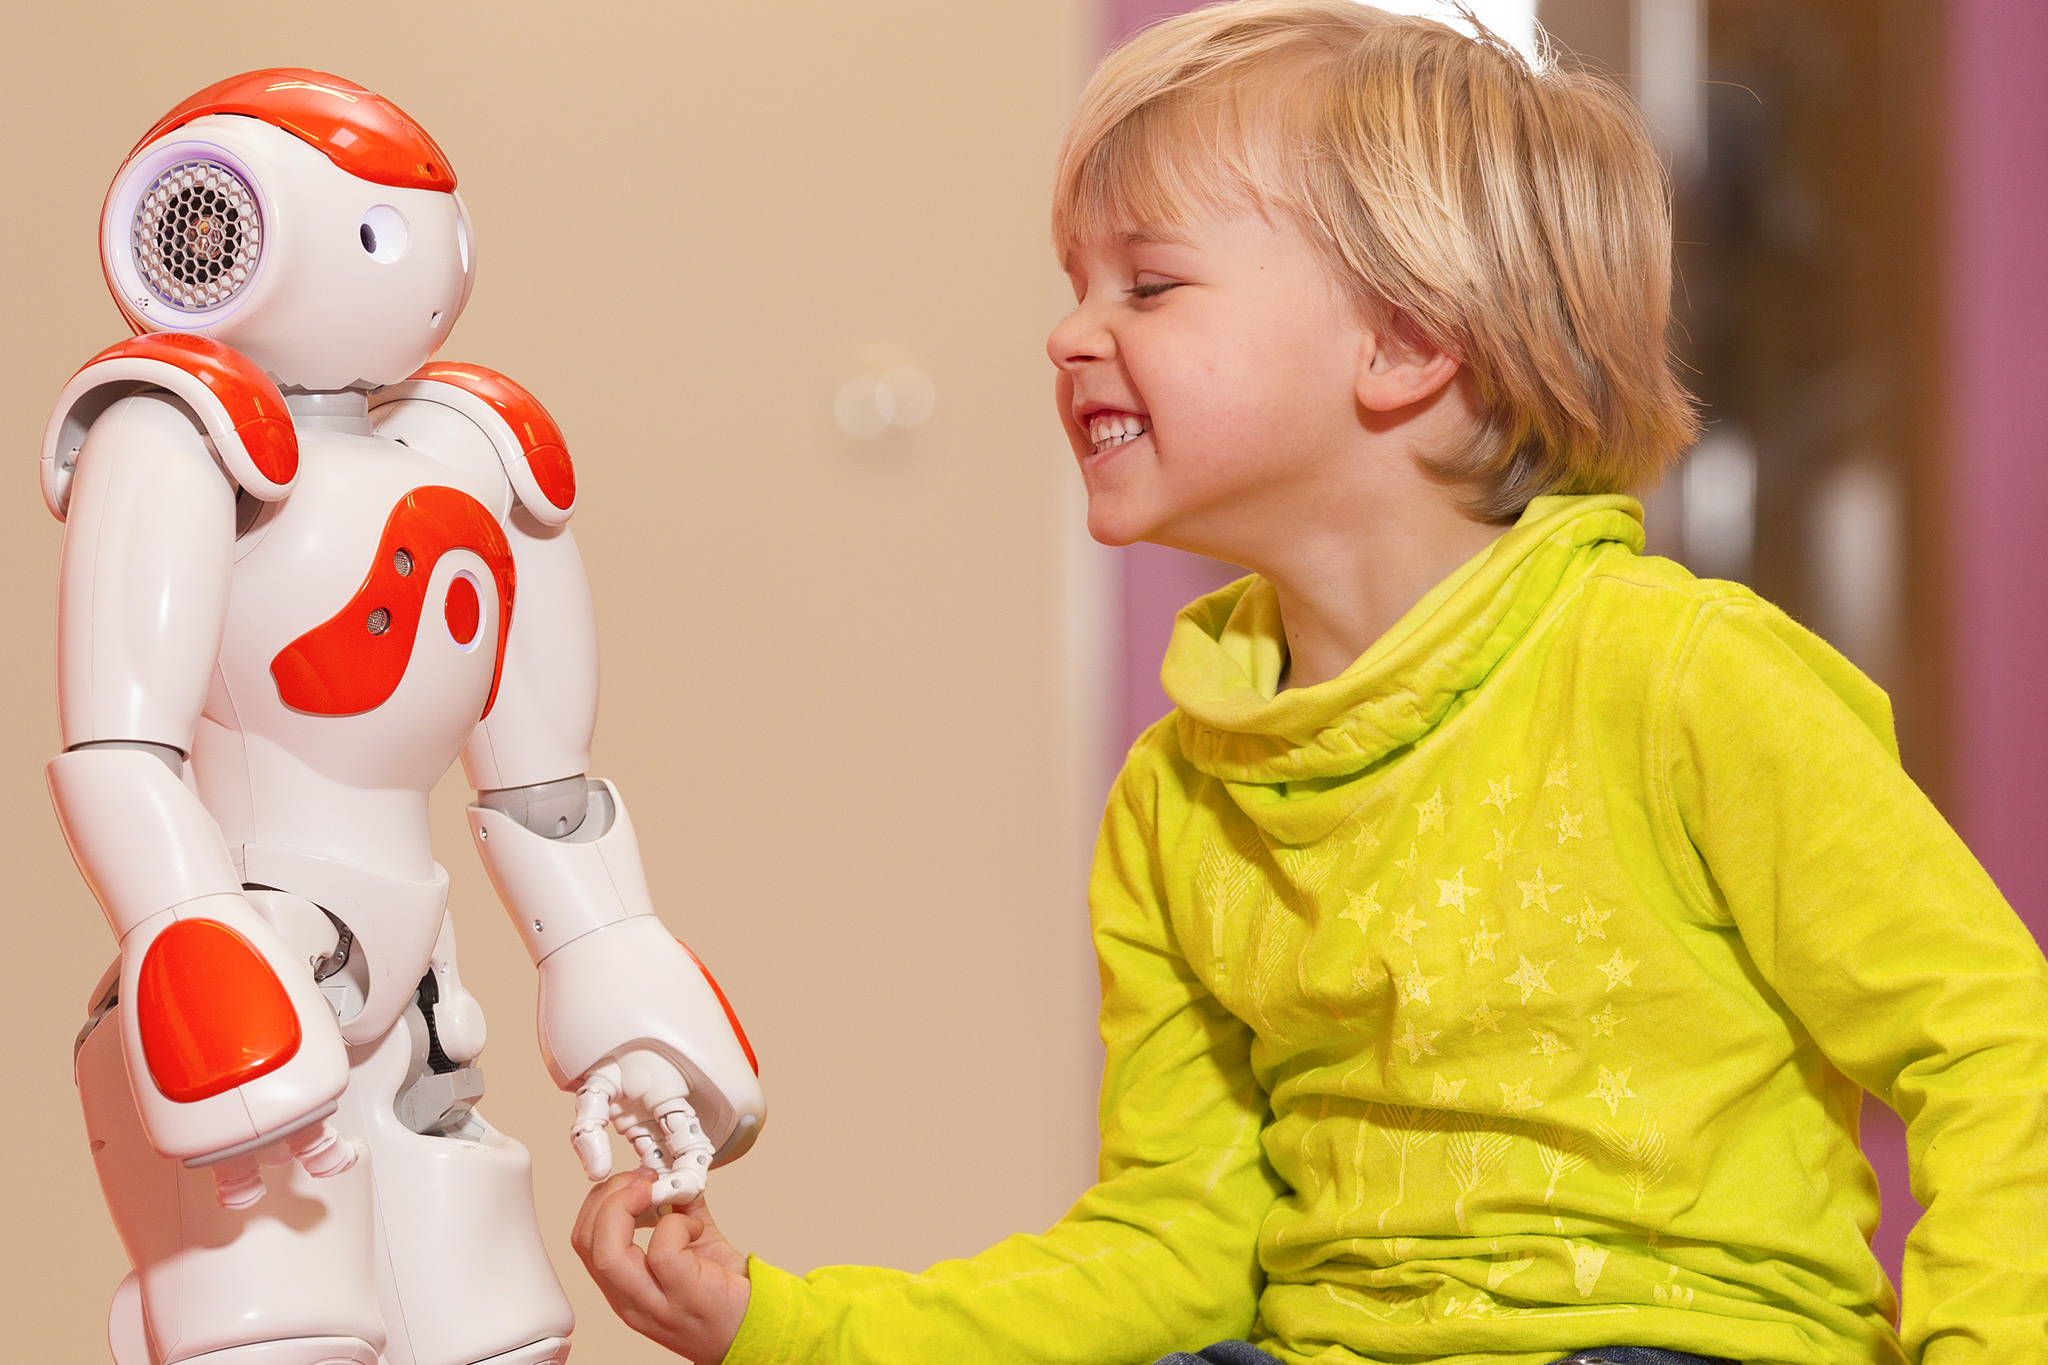 Forschungsprojekt ERIK, lachendes Kind spielt mit Roboter